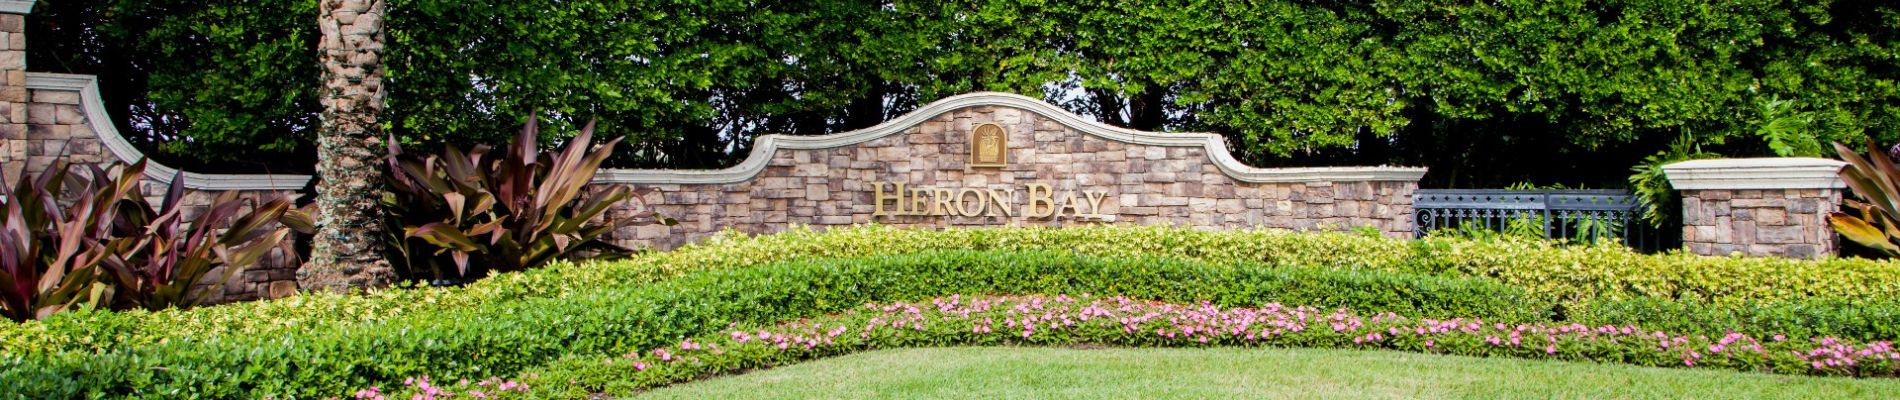 Heron Bay Real Estate